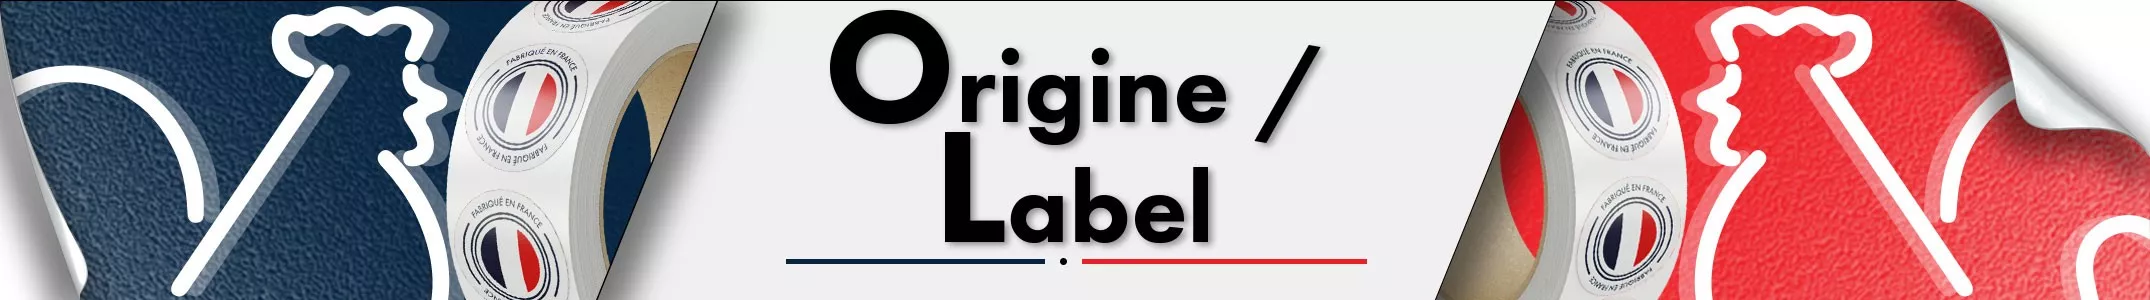 Origine / Label